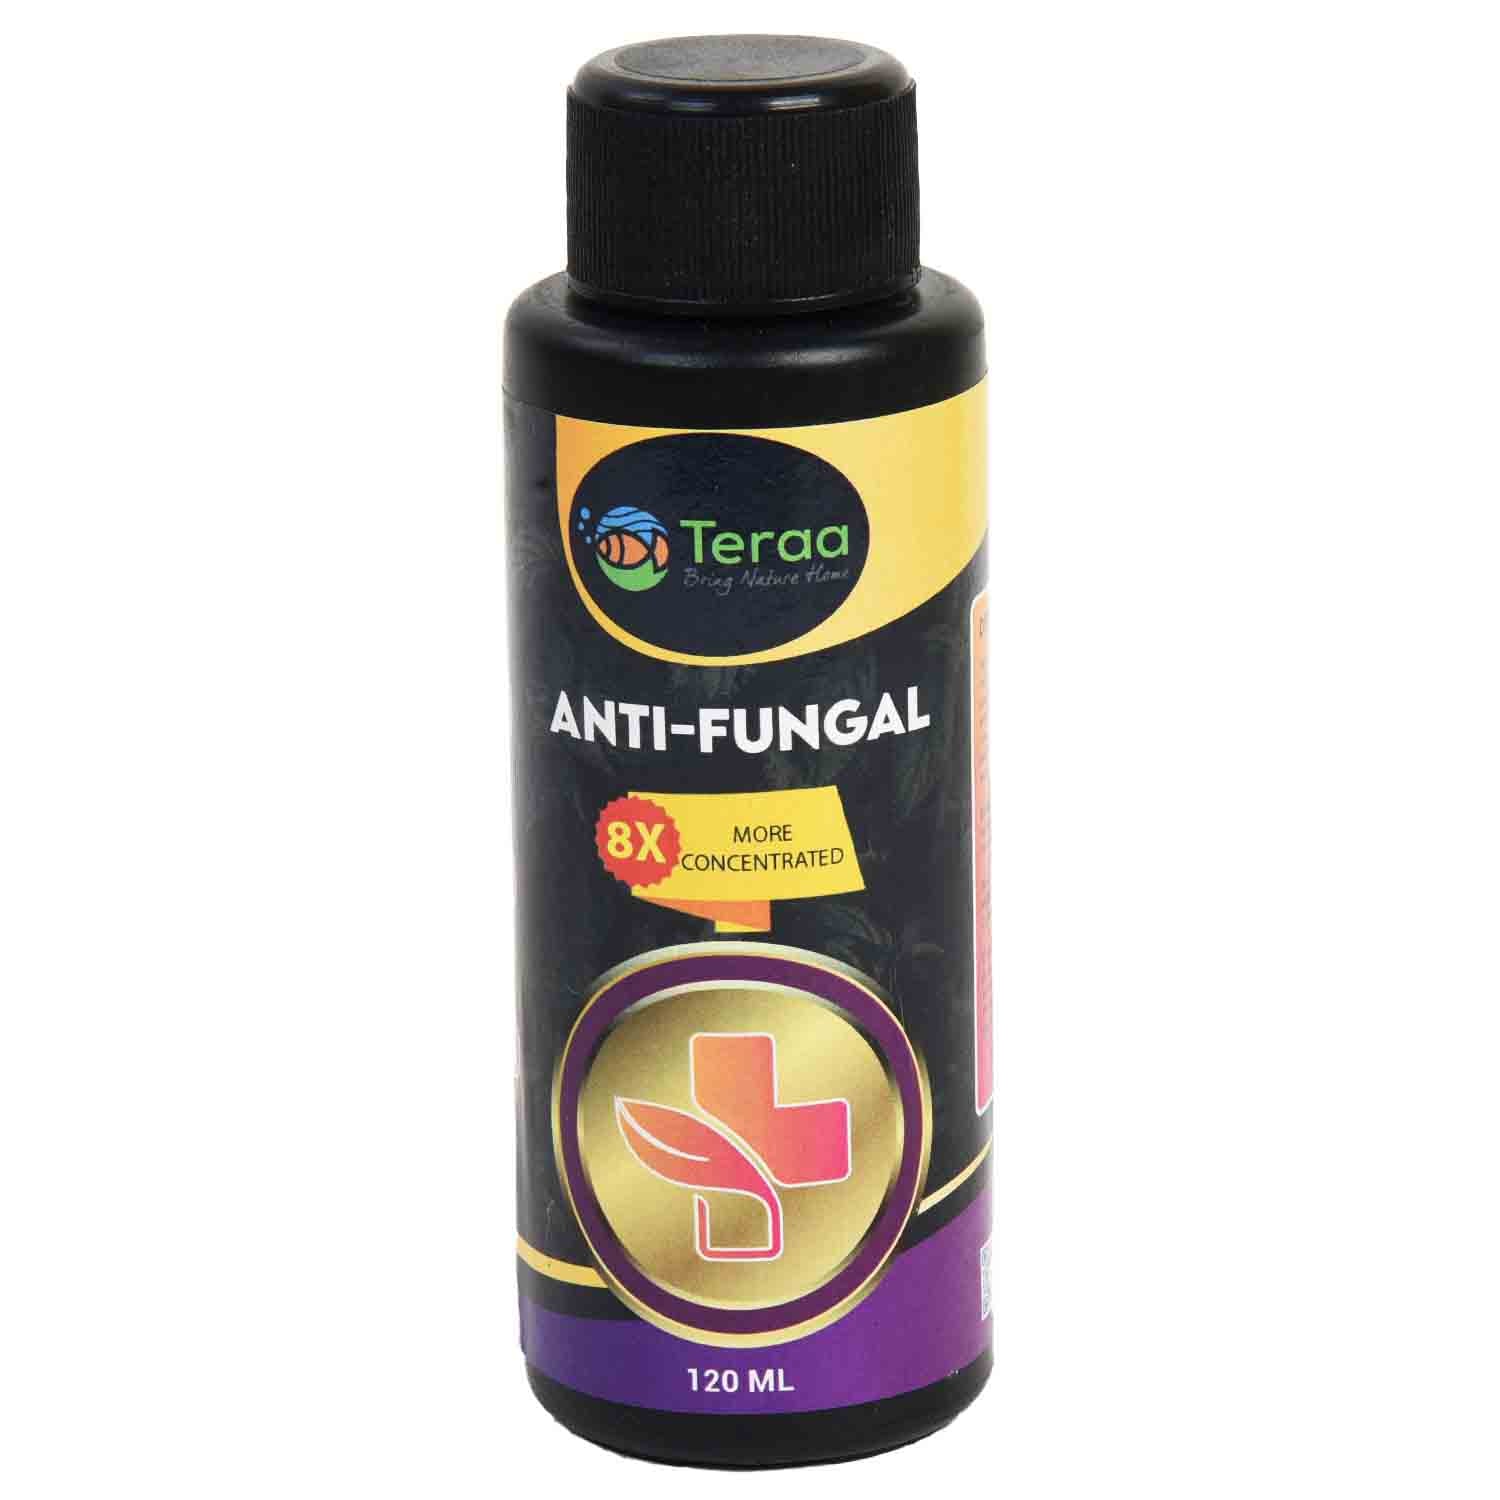 Teraa Anti-Fungal